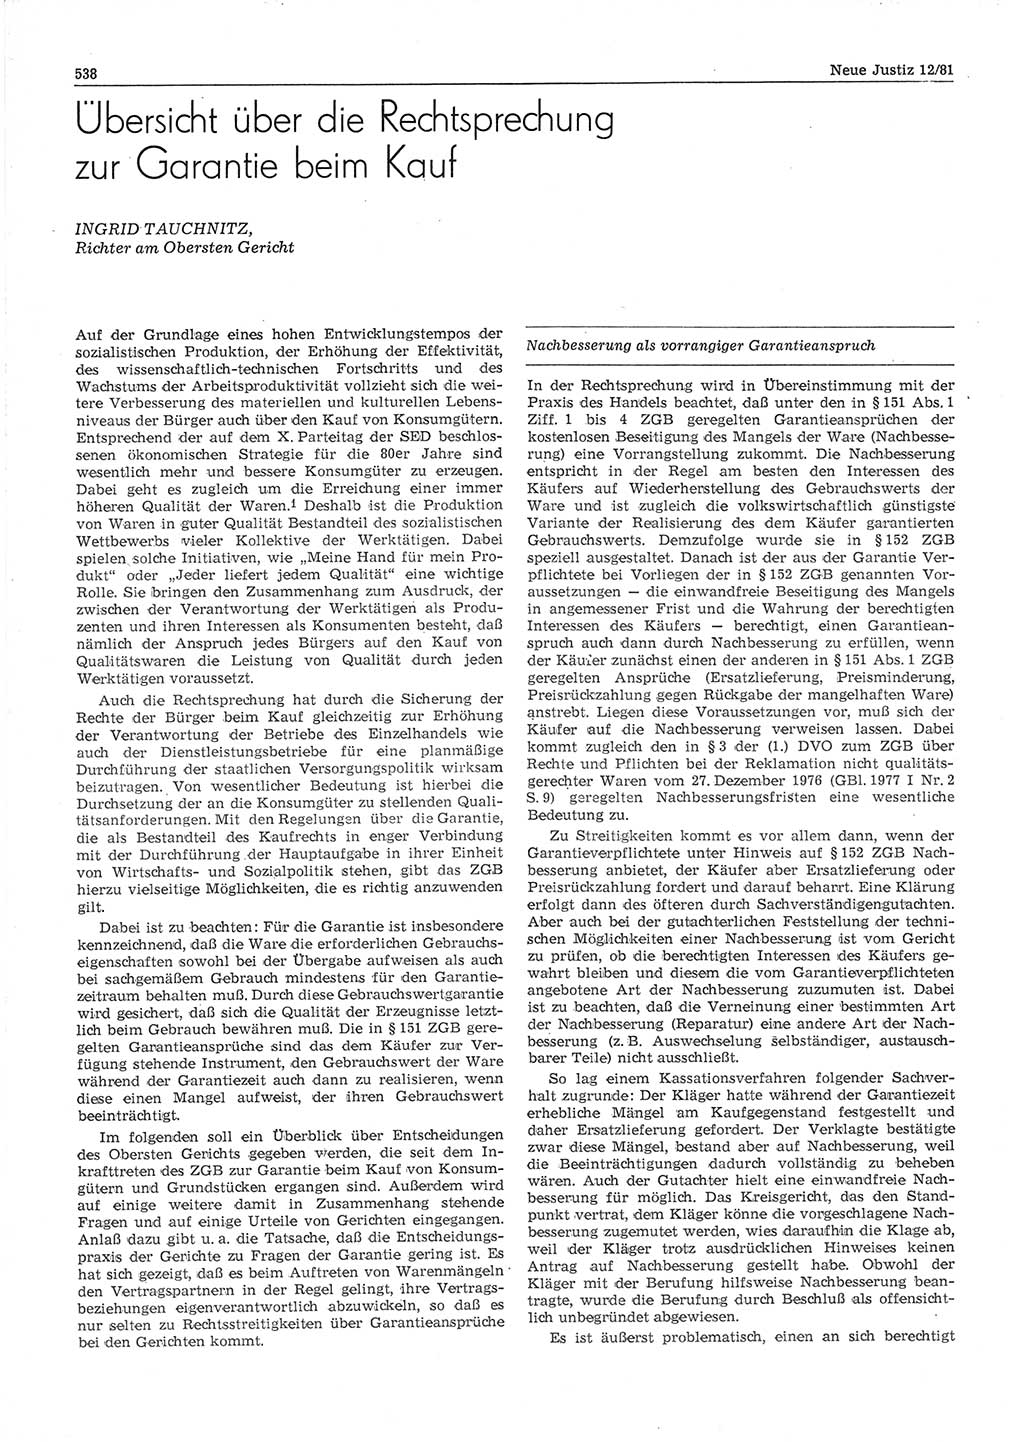 Neue Justiz (NJ), Zeitschrift für sozialistisches Recht und Gesetzlichkeit [Deutsche Demokratische Republik (DDR)], 35. Jahrgang 1981, Seite 538 (NJ DDR 1981, S. 538)